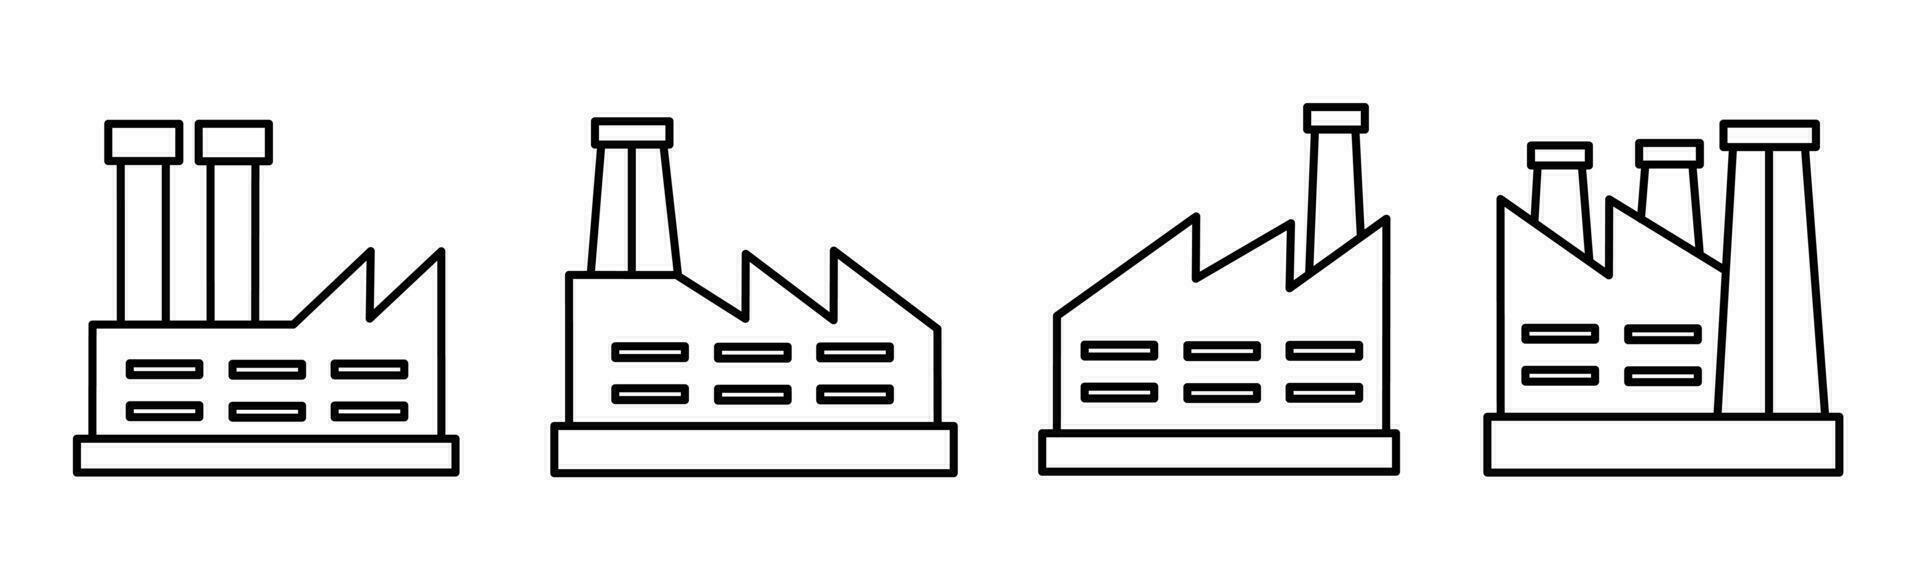 fabrik ikon mall. stock vektor illustration.